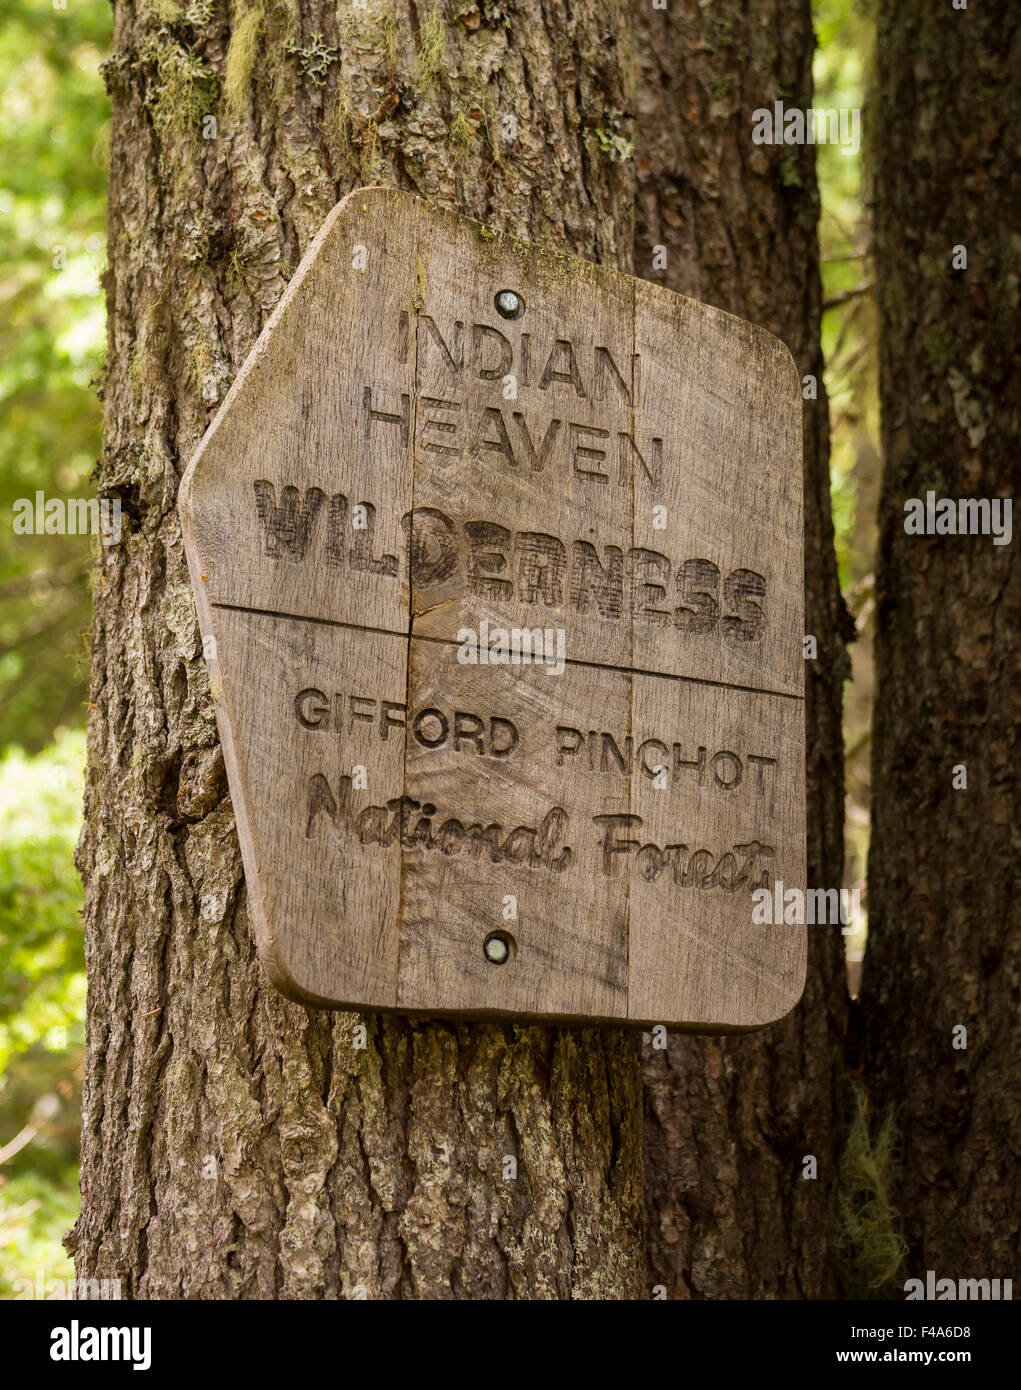 GIFFORD PINCHOT NATIONAL FOREST, WASHINGTON, USA - hölzerne Schild an Baum auf Trail am Trailhead, Indian Heaven Wilderness. Stockfoto